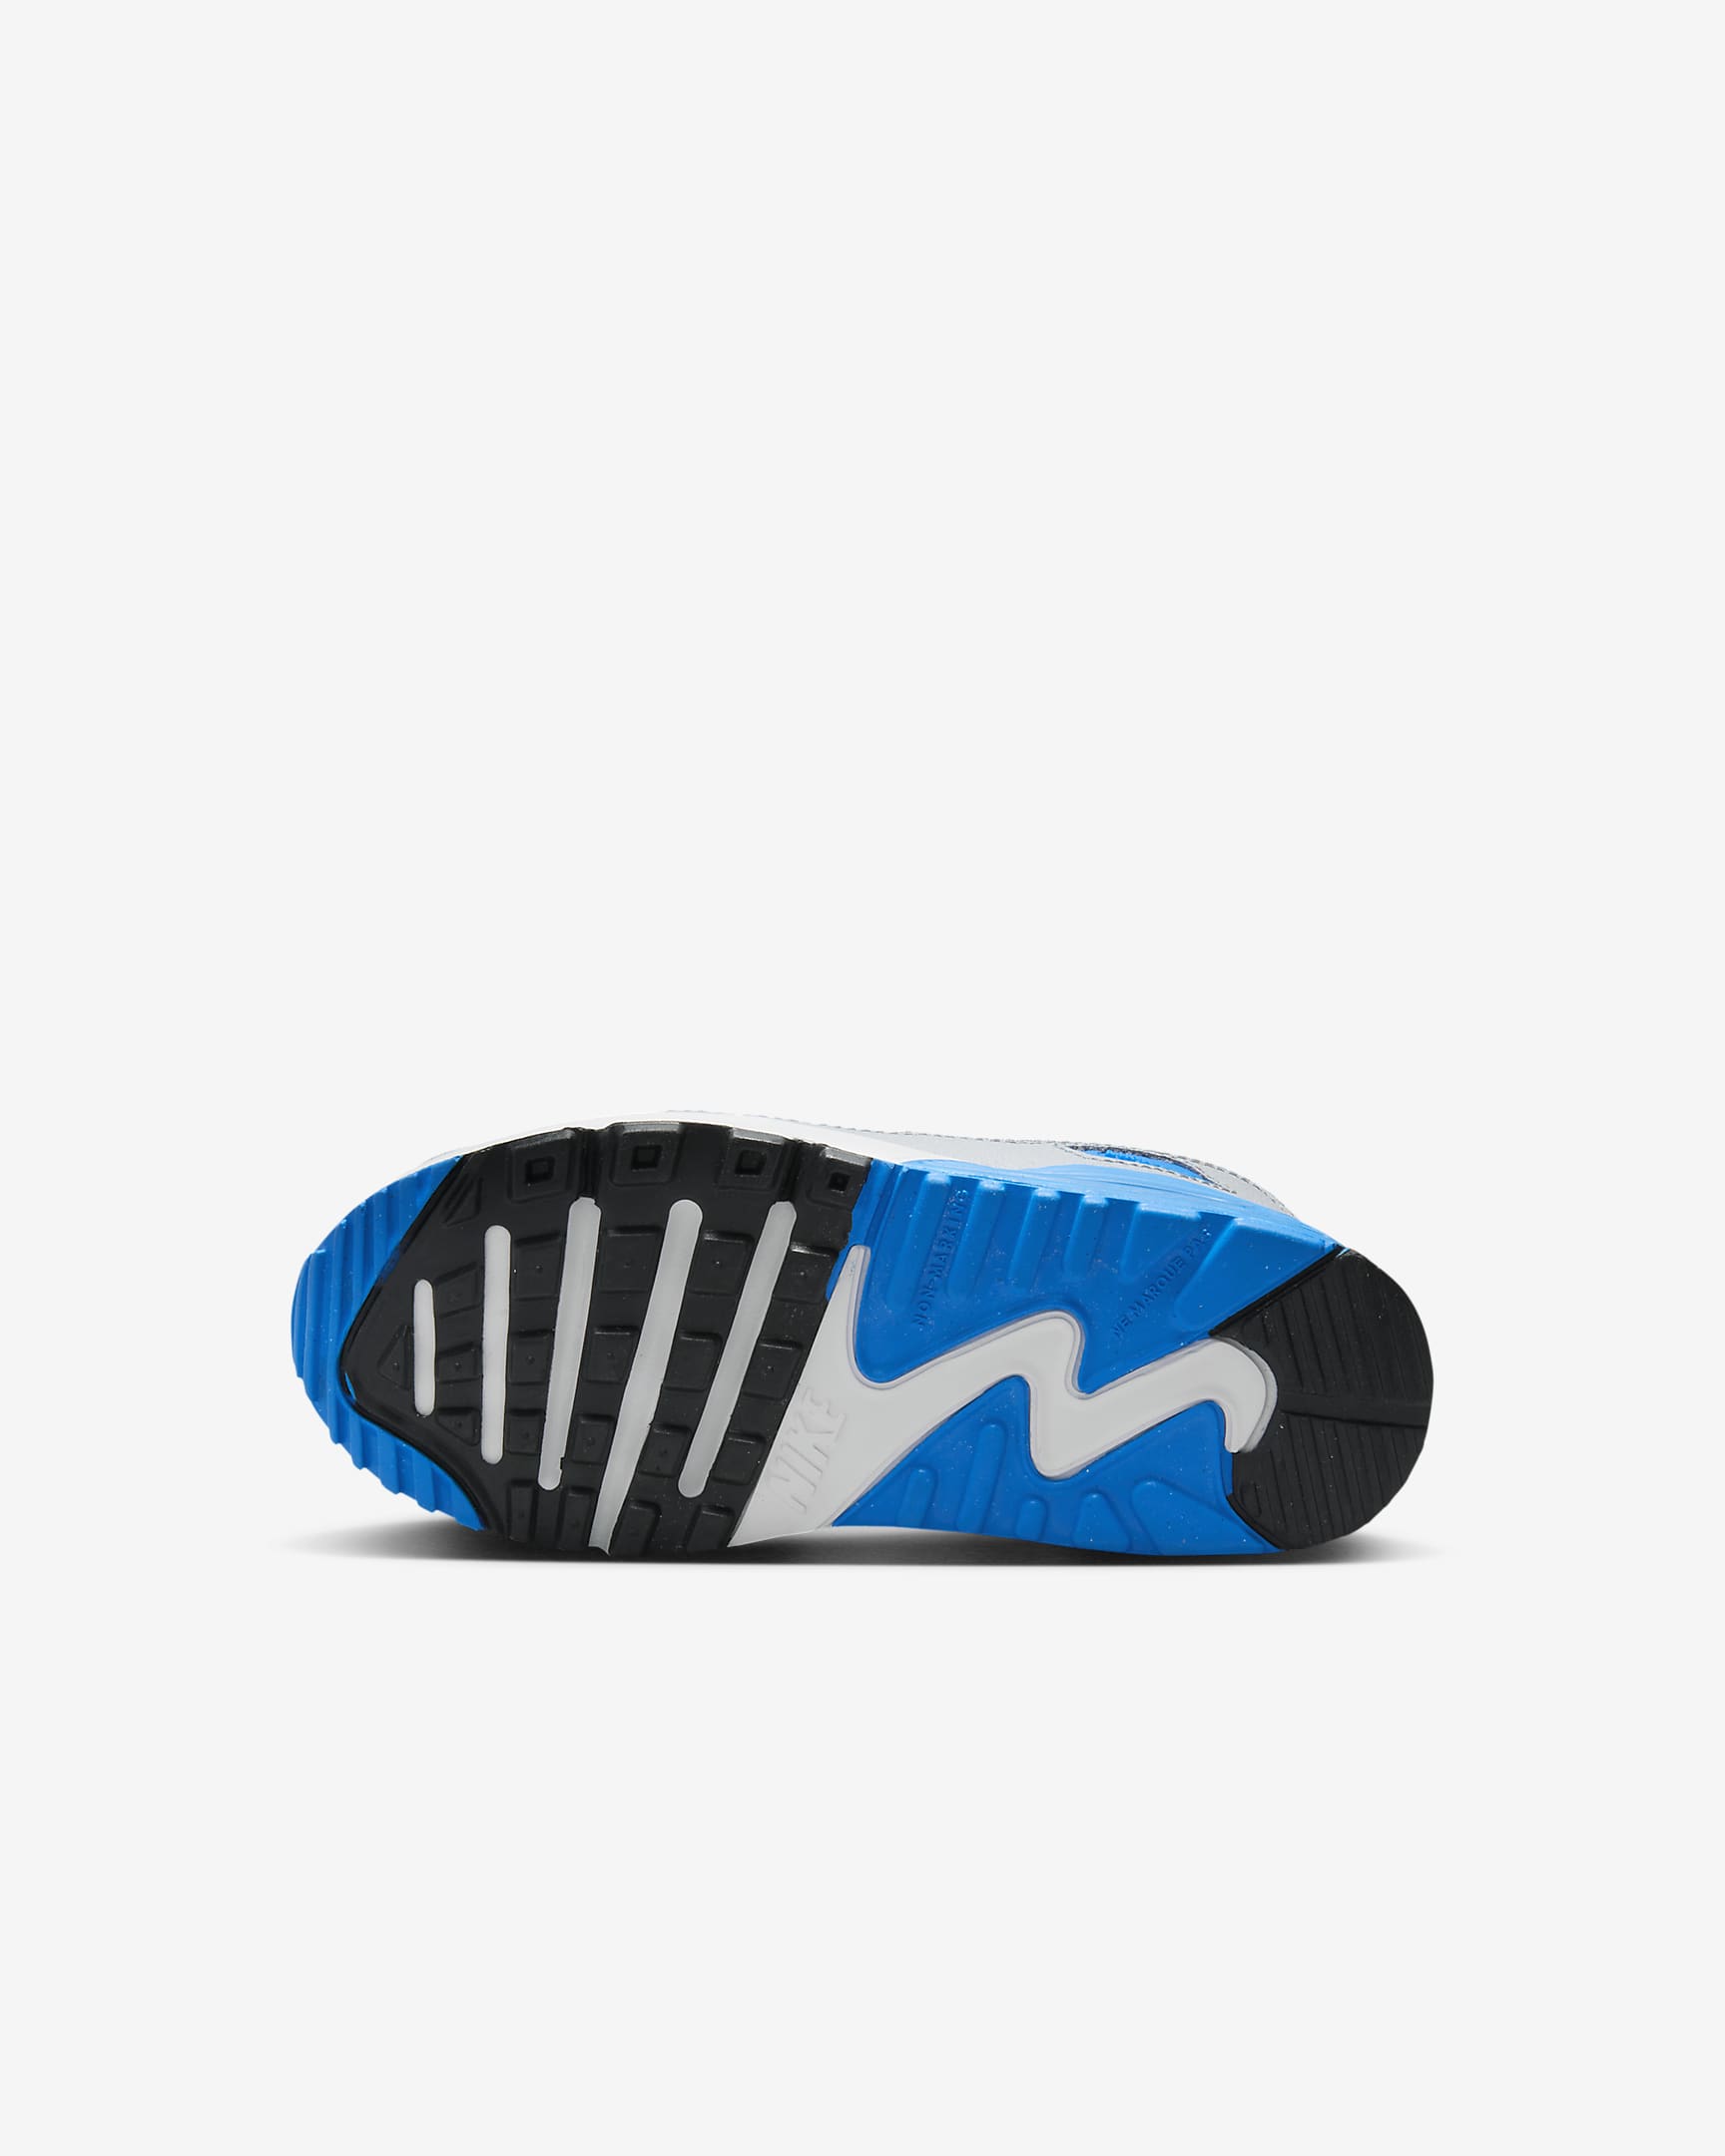 Chaussure Nike Air Max 90 LTR pour Jeune enfant - Blanc/Photo Blue/Pure Platinum/Noir